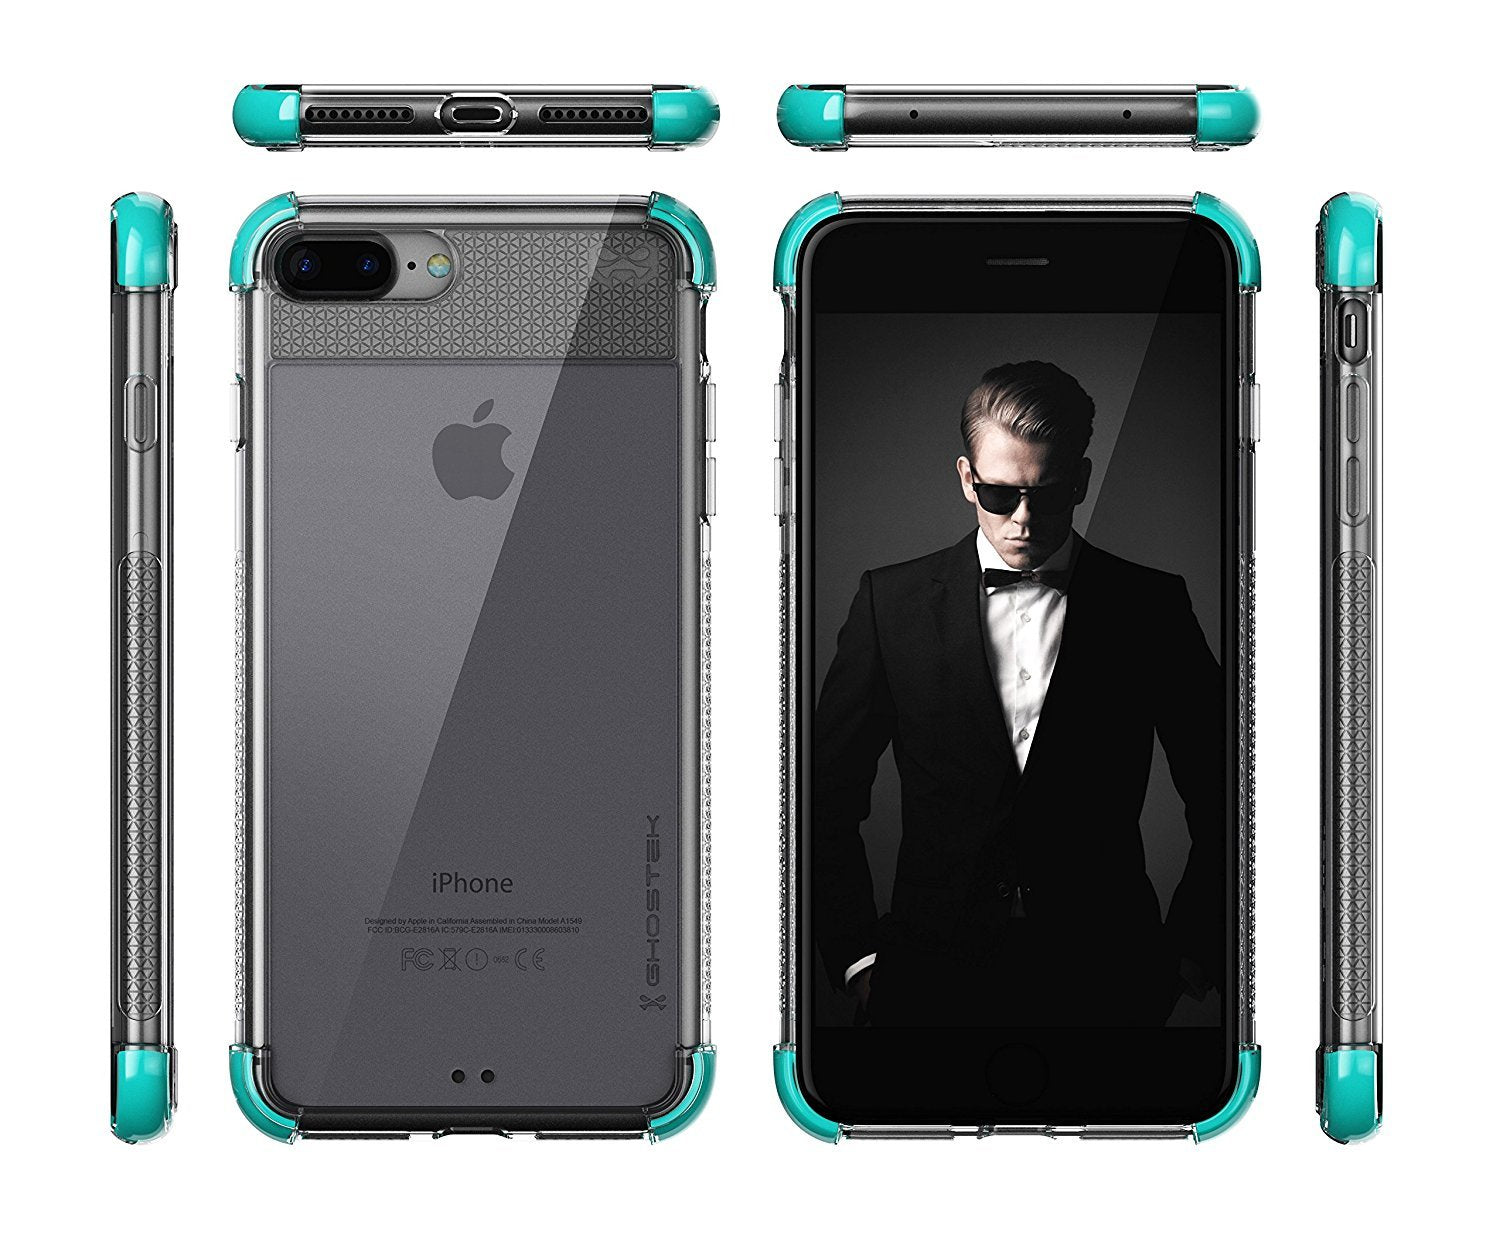 iPhone 8+ Plus Case, Ghostek Covert 2 Series Case [Teal]